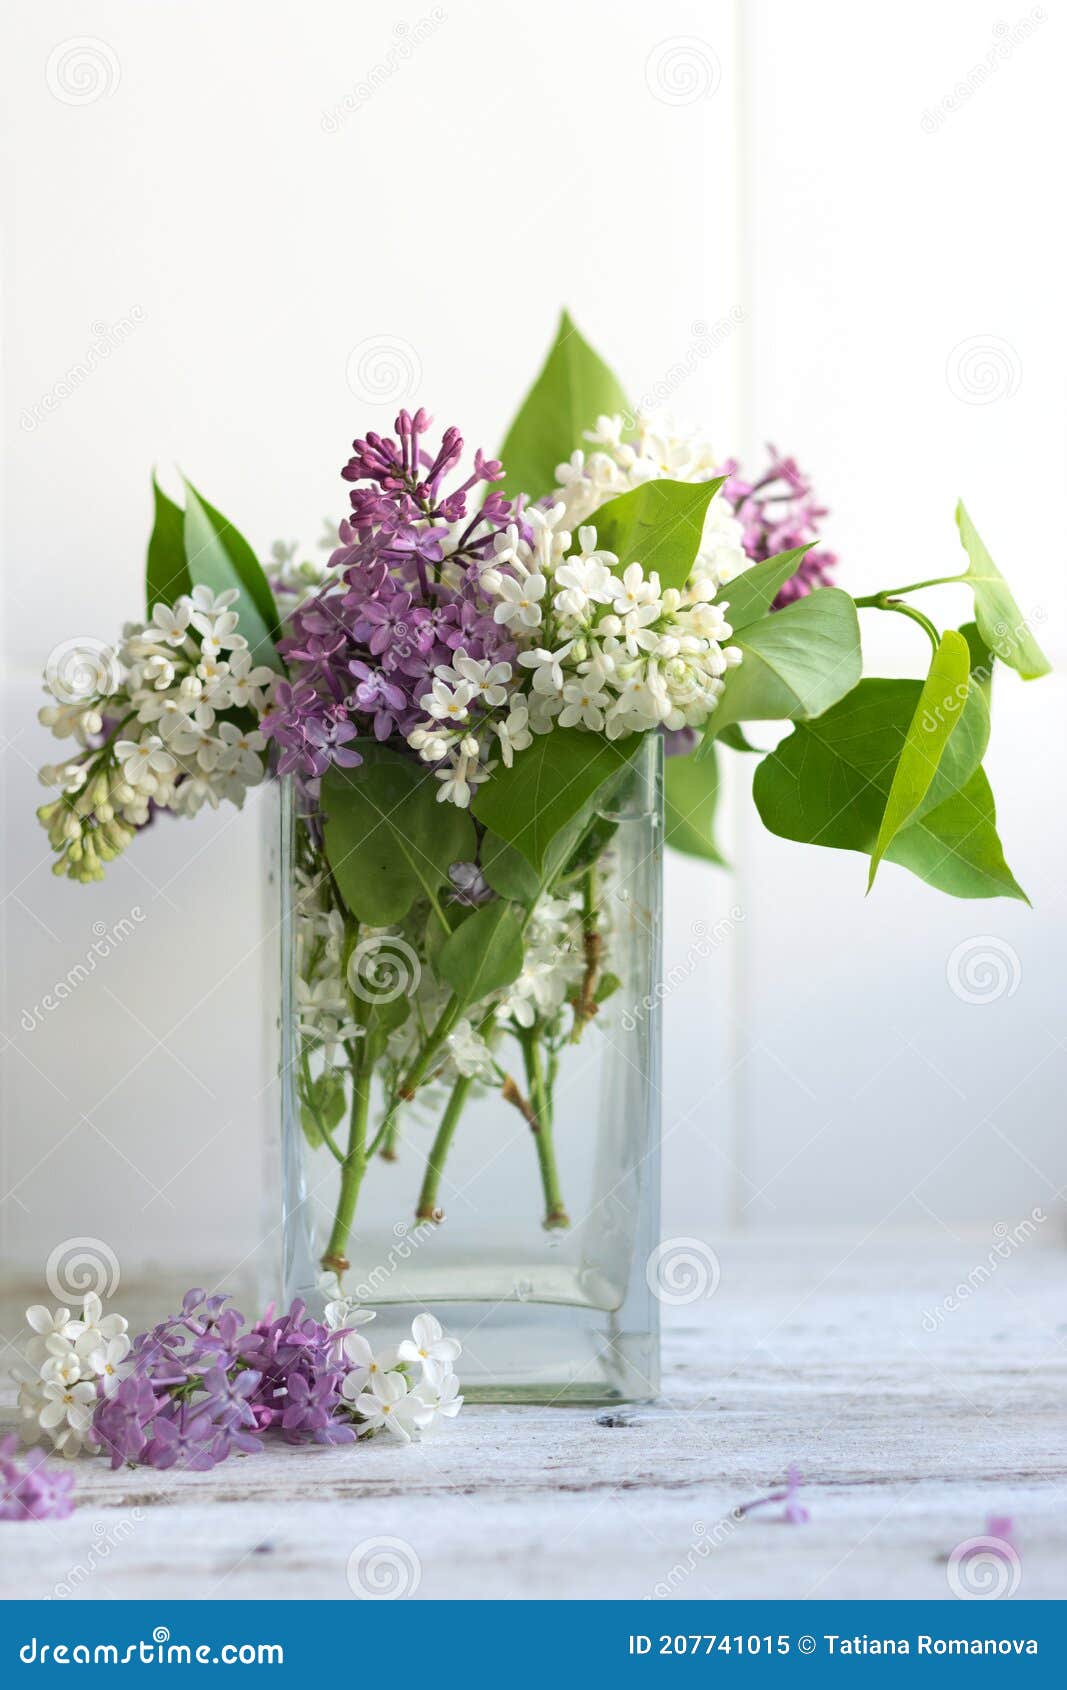 Un Bouquet De Lilas Mauve Et Blanc Du Printemps Dans Un Vase Sur Fond Clair  De Bois Et De Tuiles. Récipient En Verre Avec Transpar Image stock - Image  du postcard, espace: